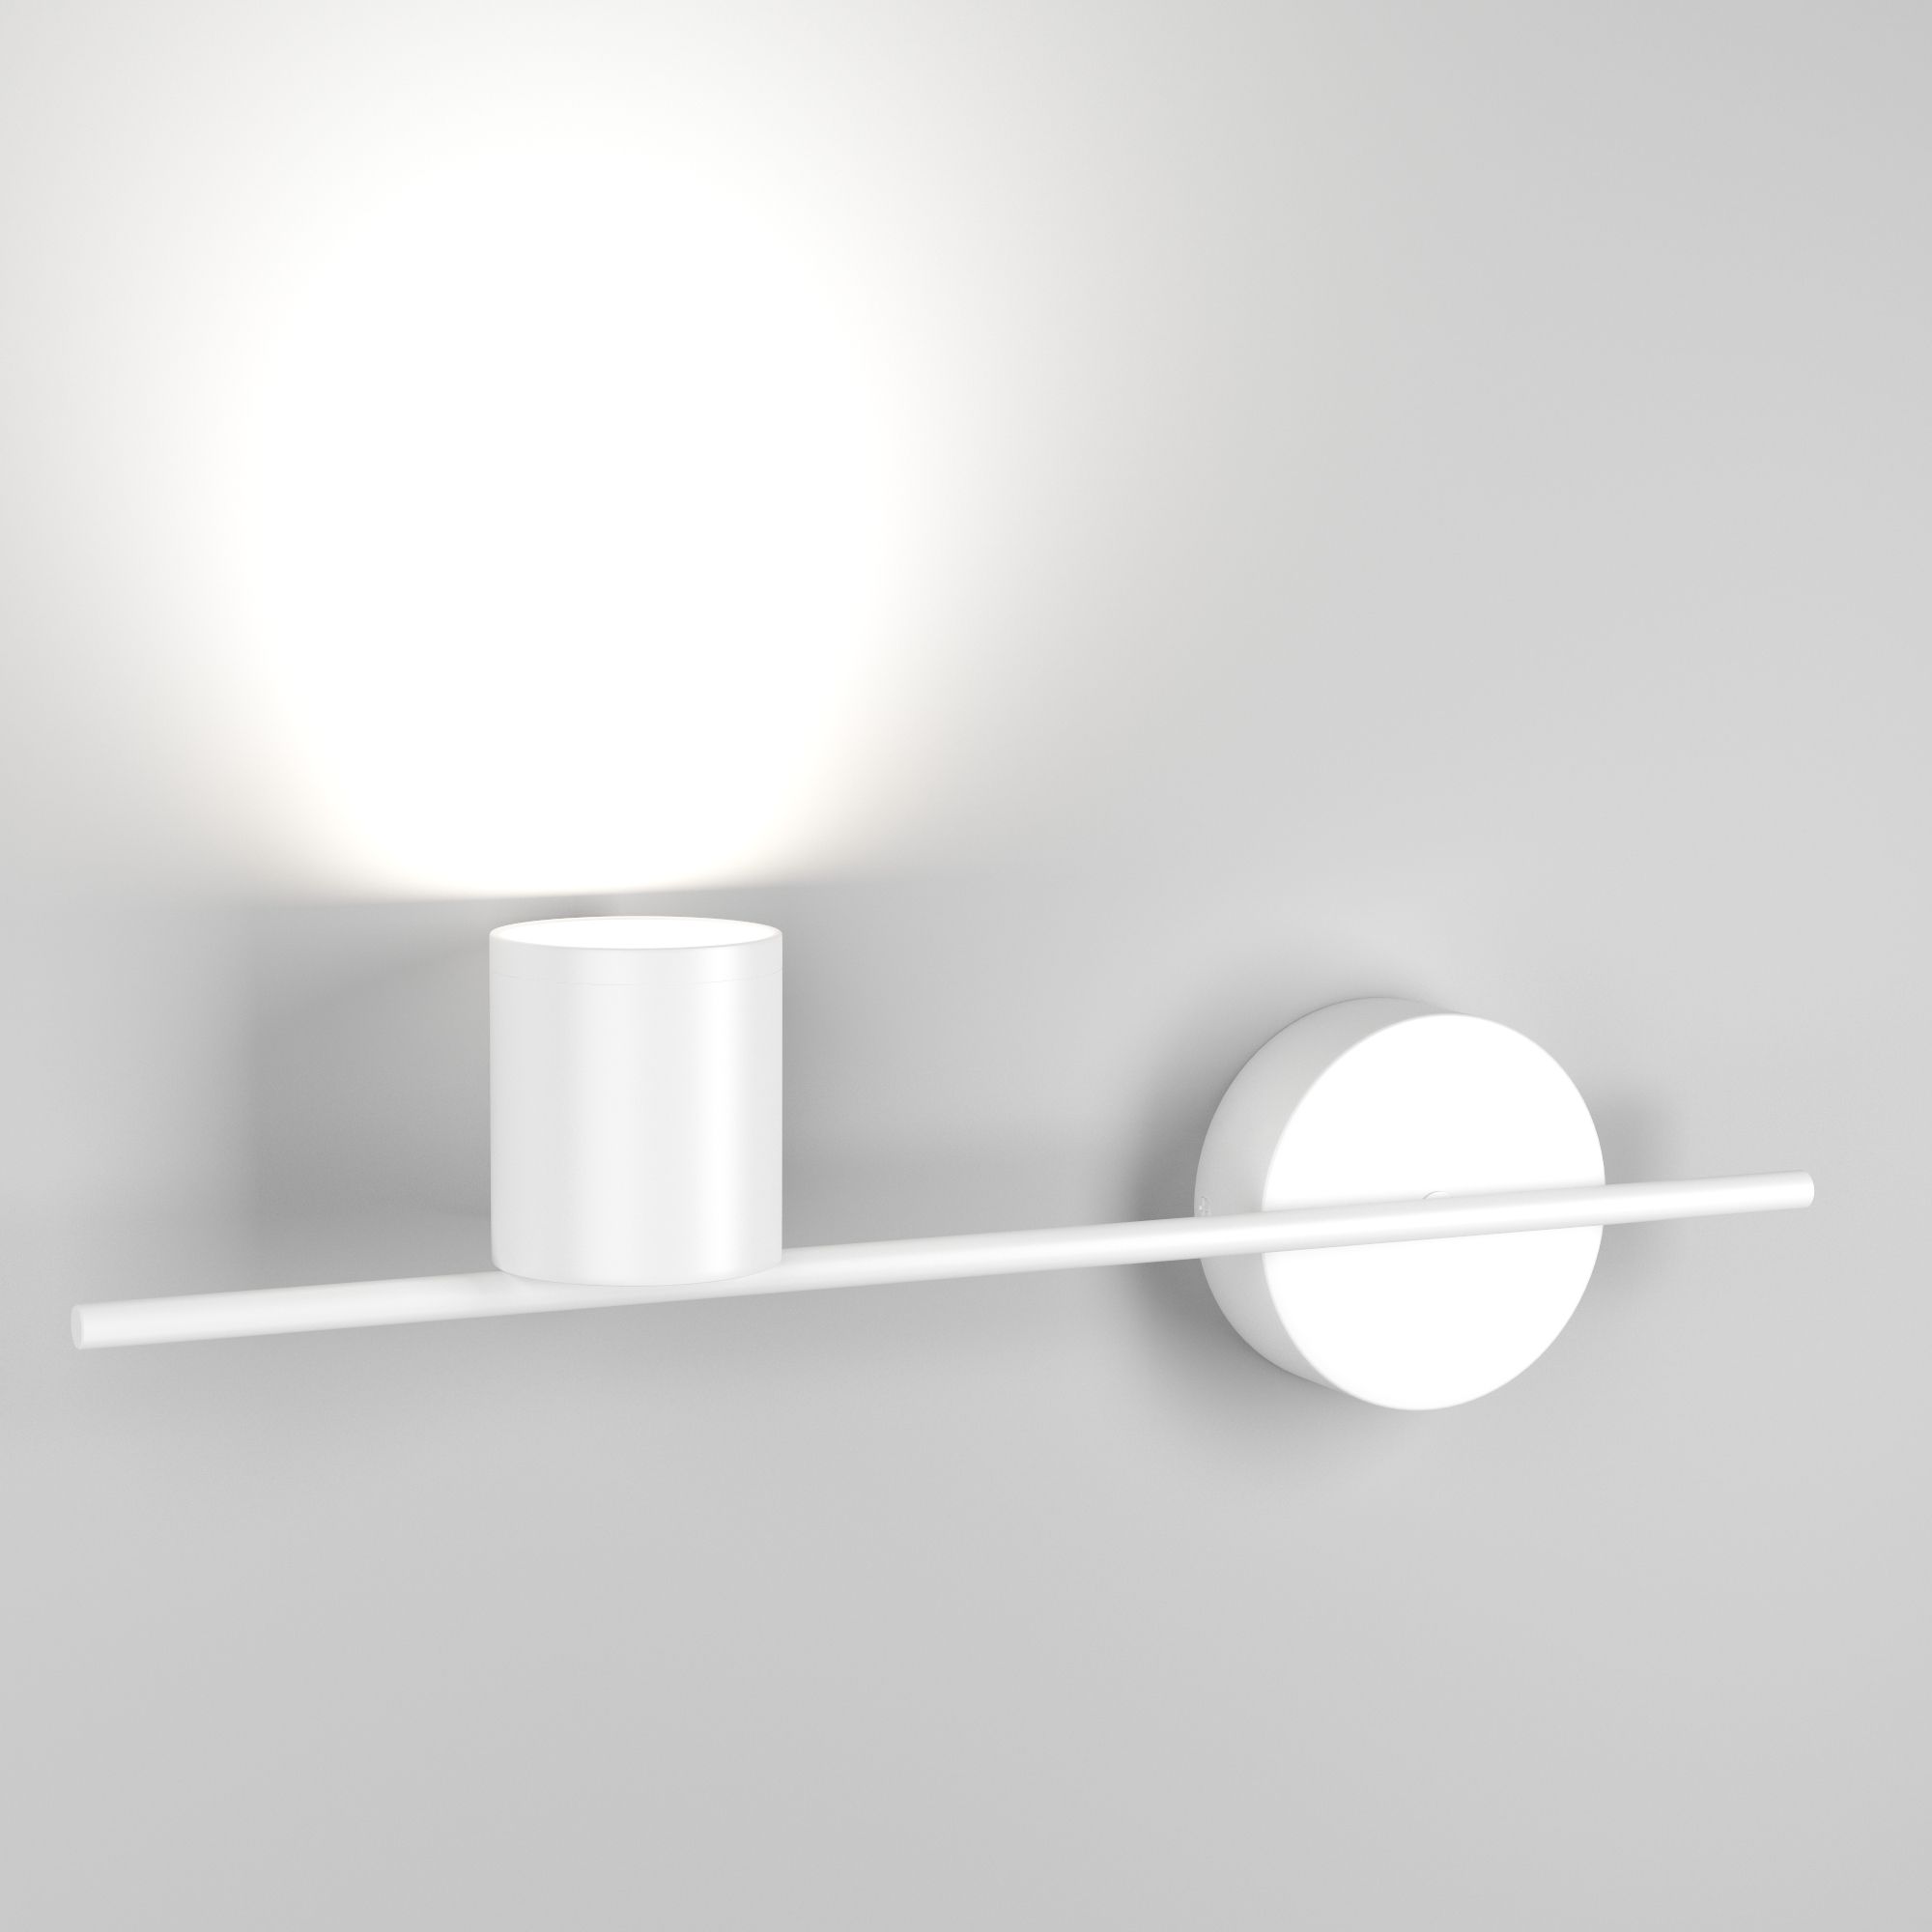 Настенный светодиодный светильник Acru LED Elektrostandard Acru MRL LED 1019 белый. Фото 2